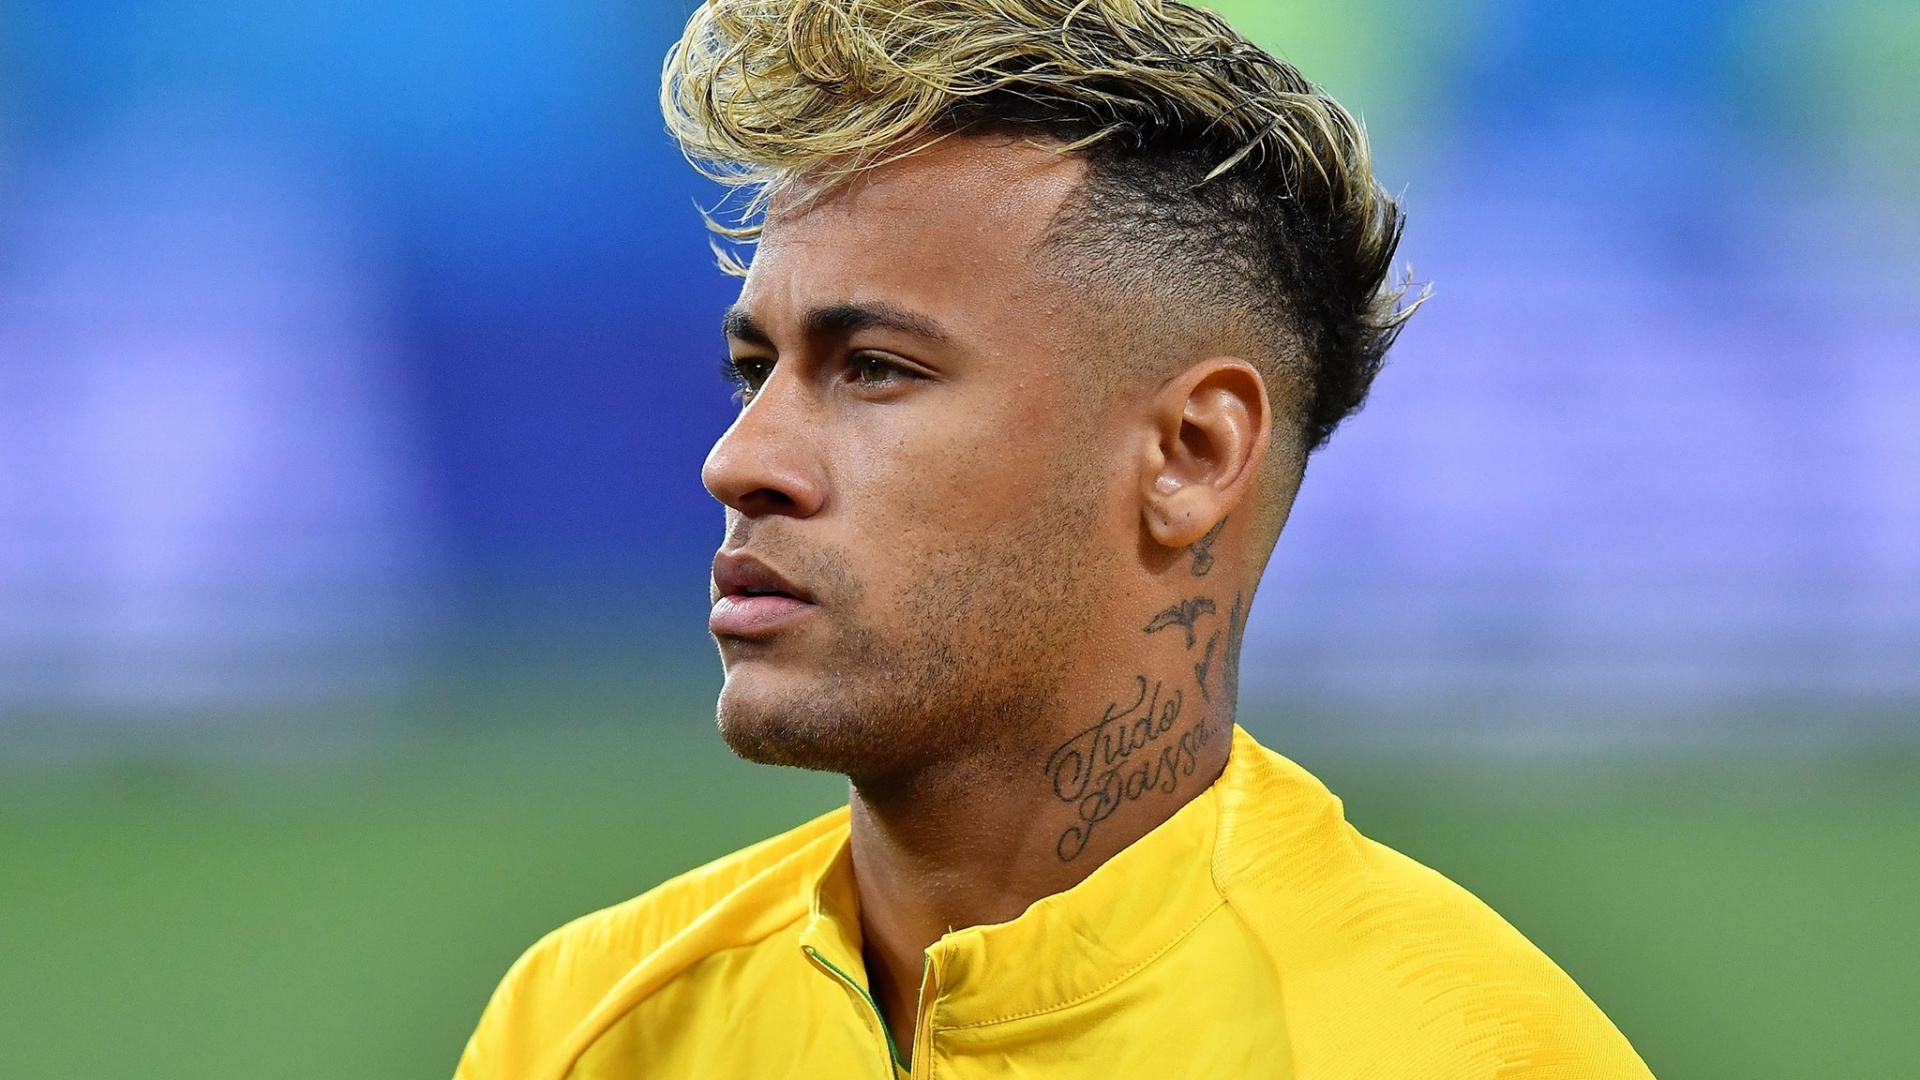 写真neymar jr壁紙,ヘア,髪型,額,サッカー選手,プレーヤー